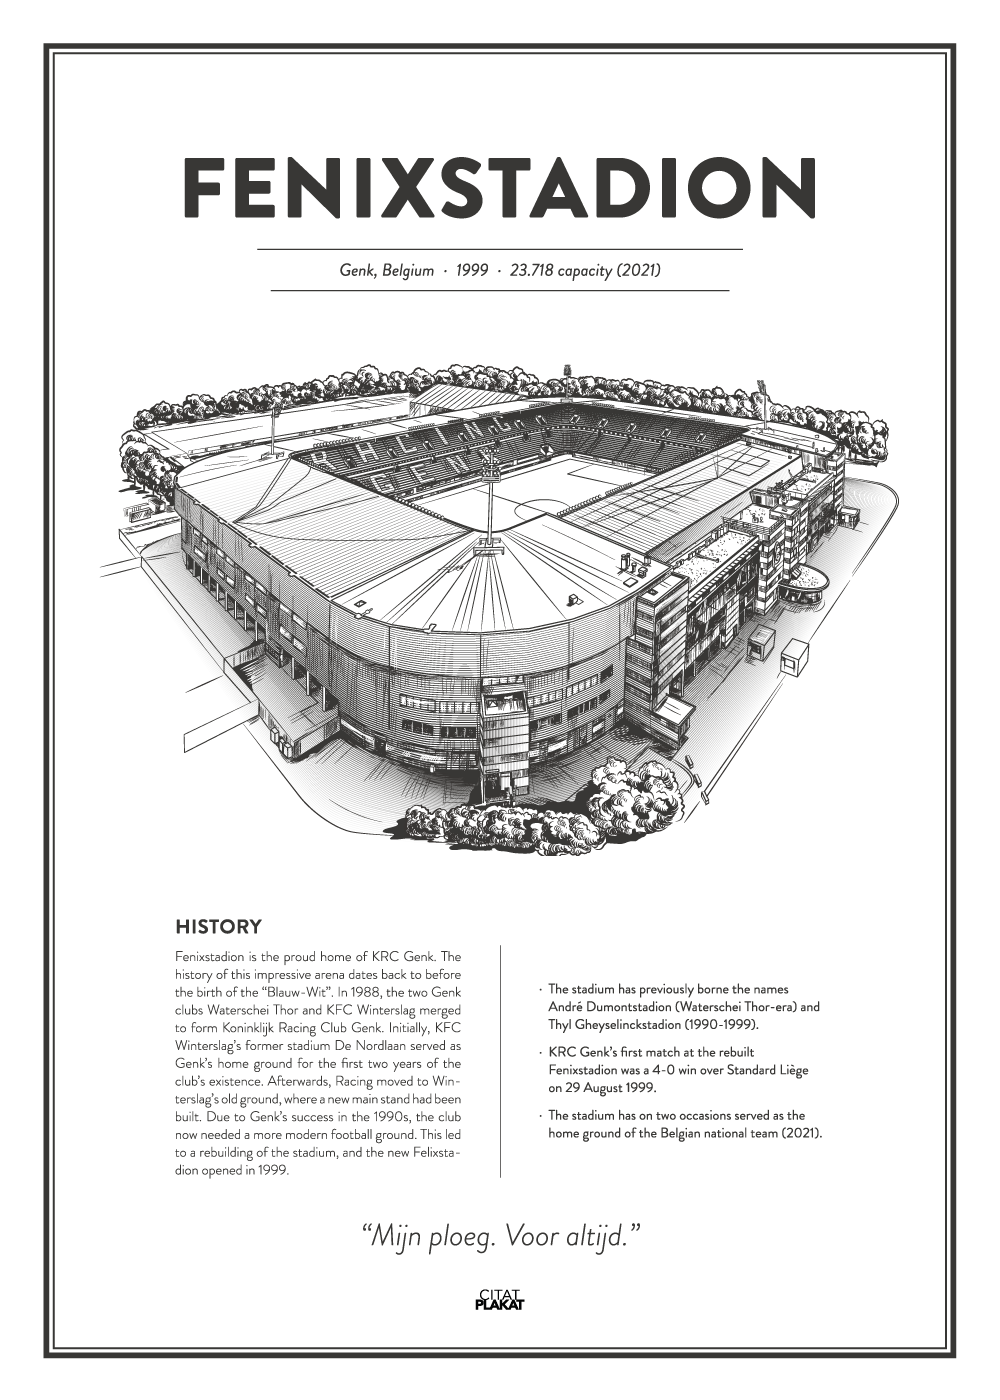 Køb Fenixstadion – Genk arena – stadionplakat